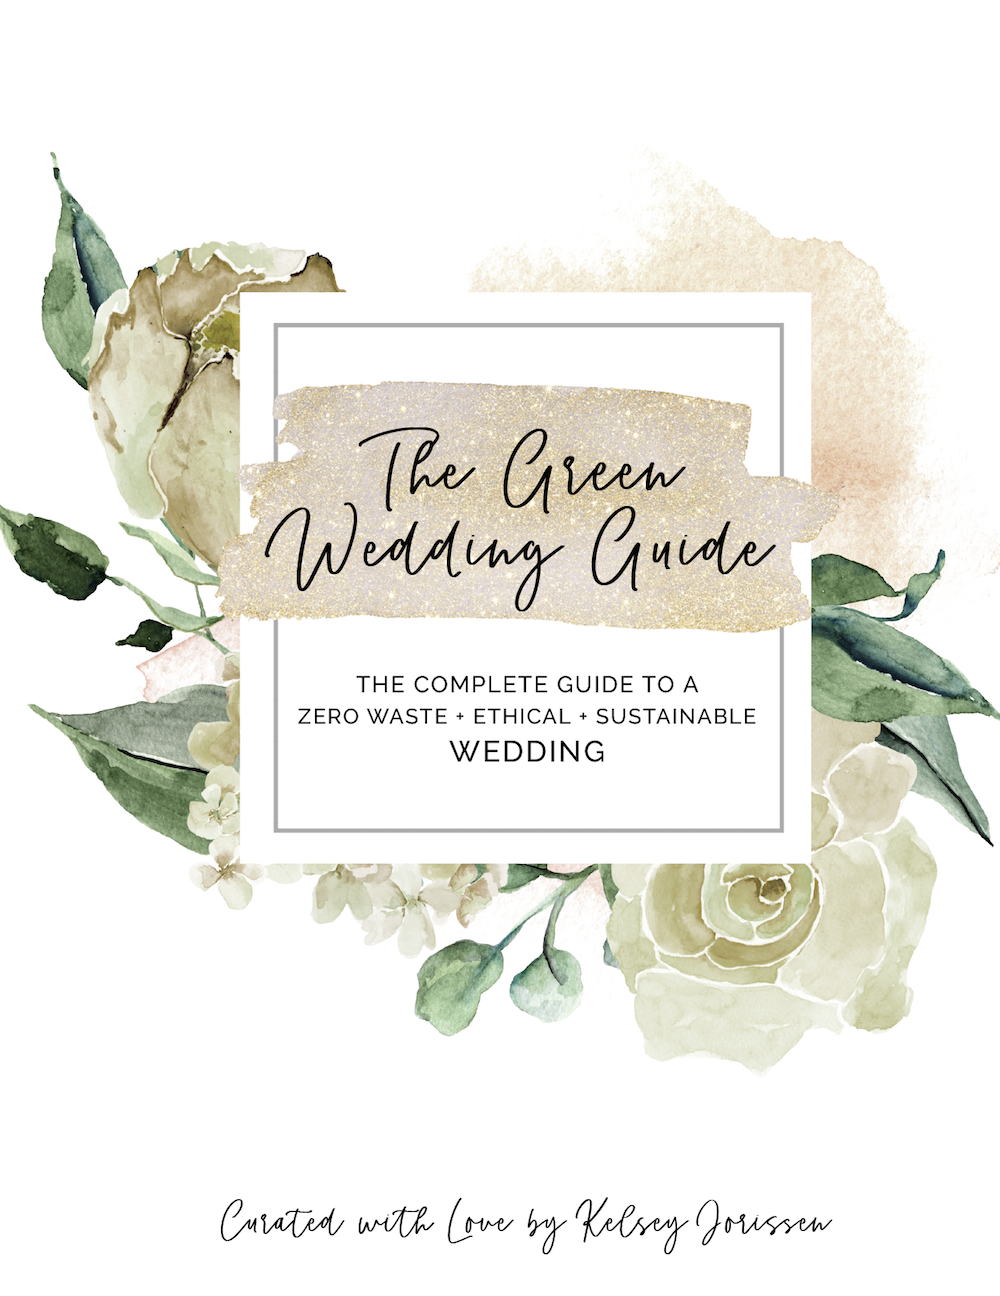 The Green Wedding Guide by Kelsey Jorissen